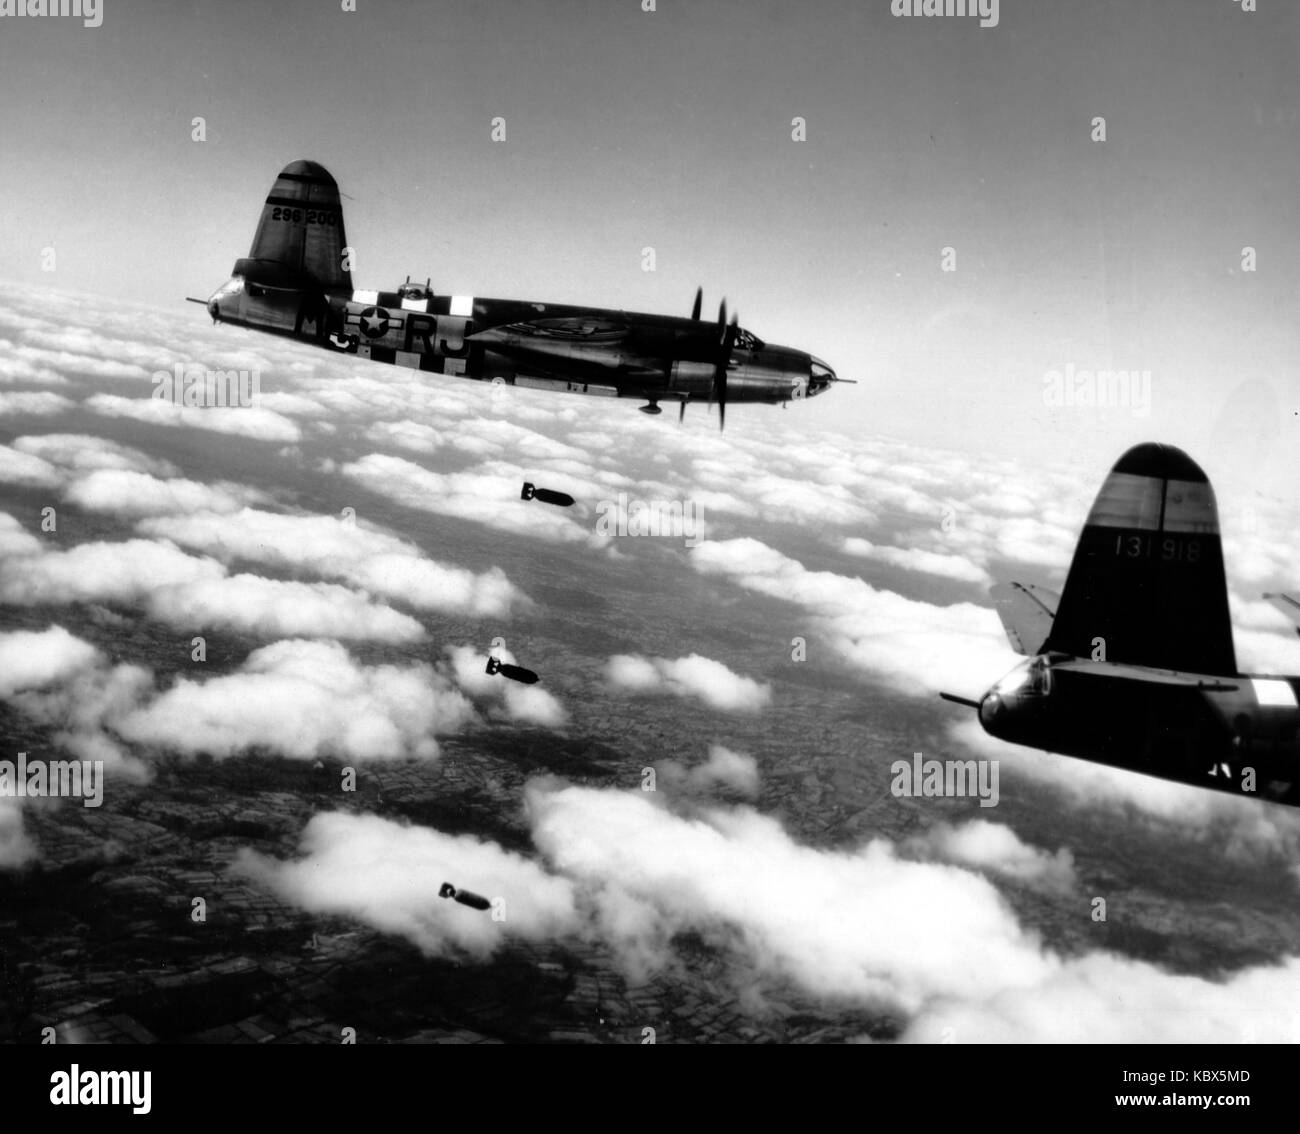 Martin b26 marauder. bombardiere americano piano in azione durante la II guerra mondiale Foto Stock